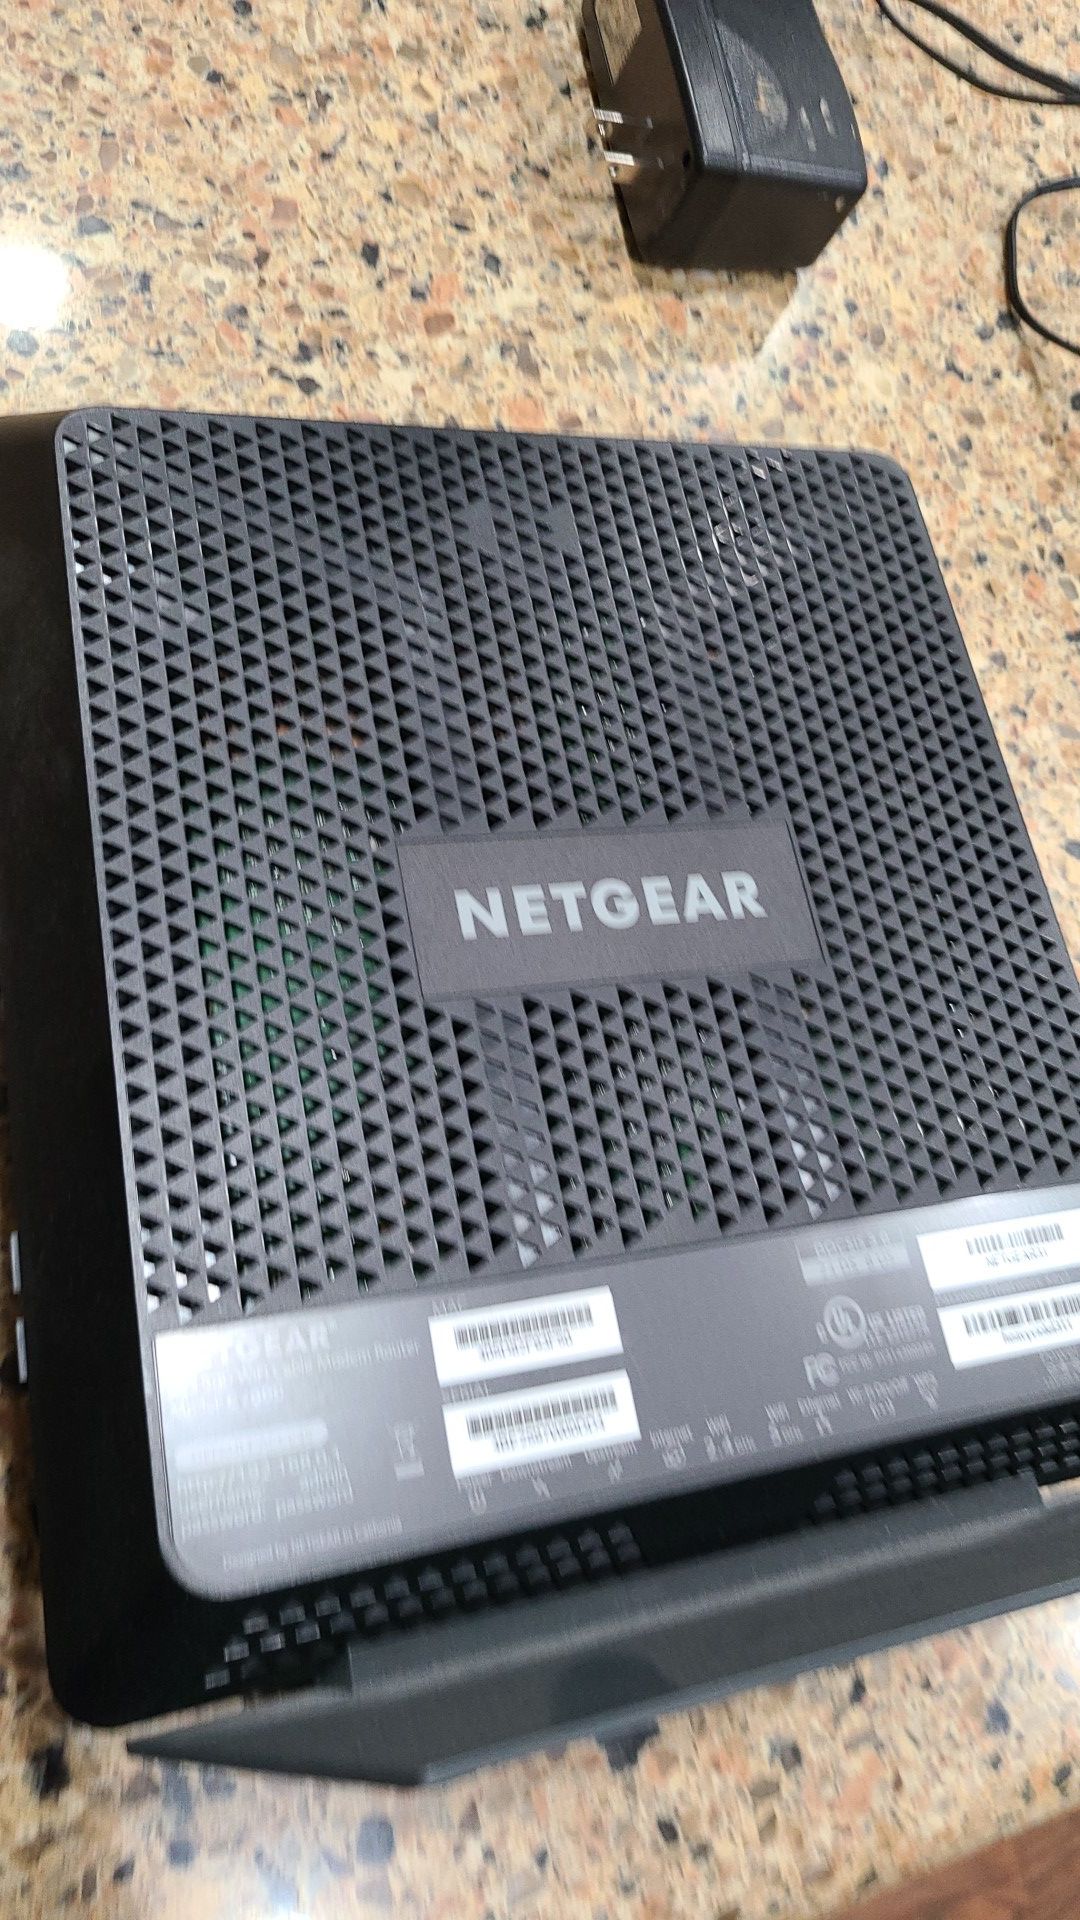 Netgear C7000 WiFi Cable Modem Router